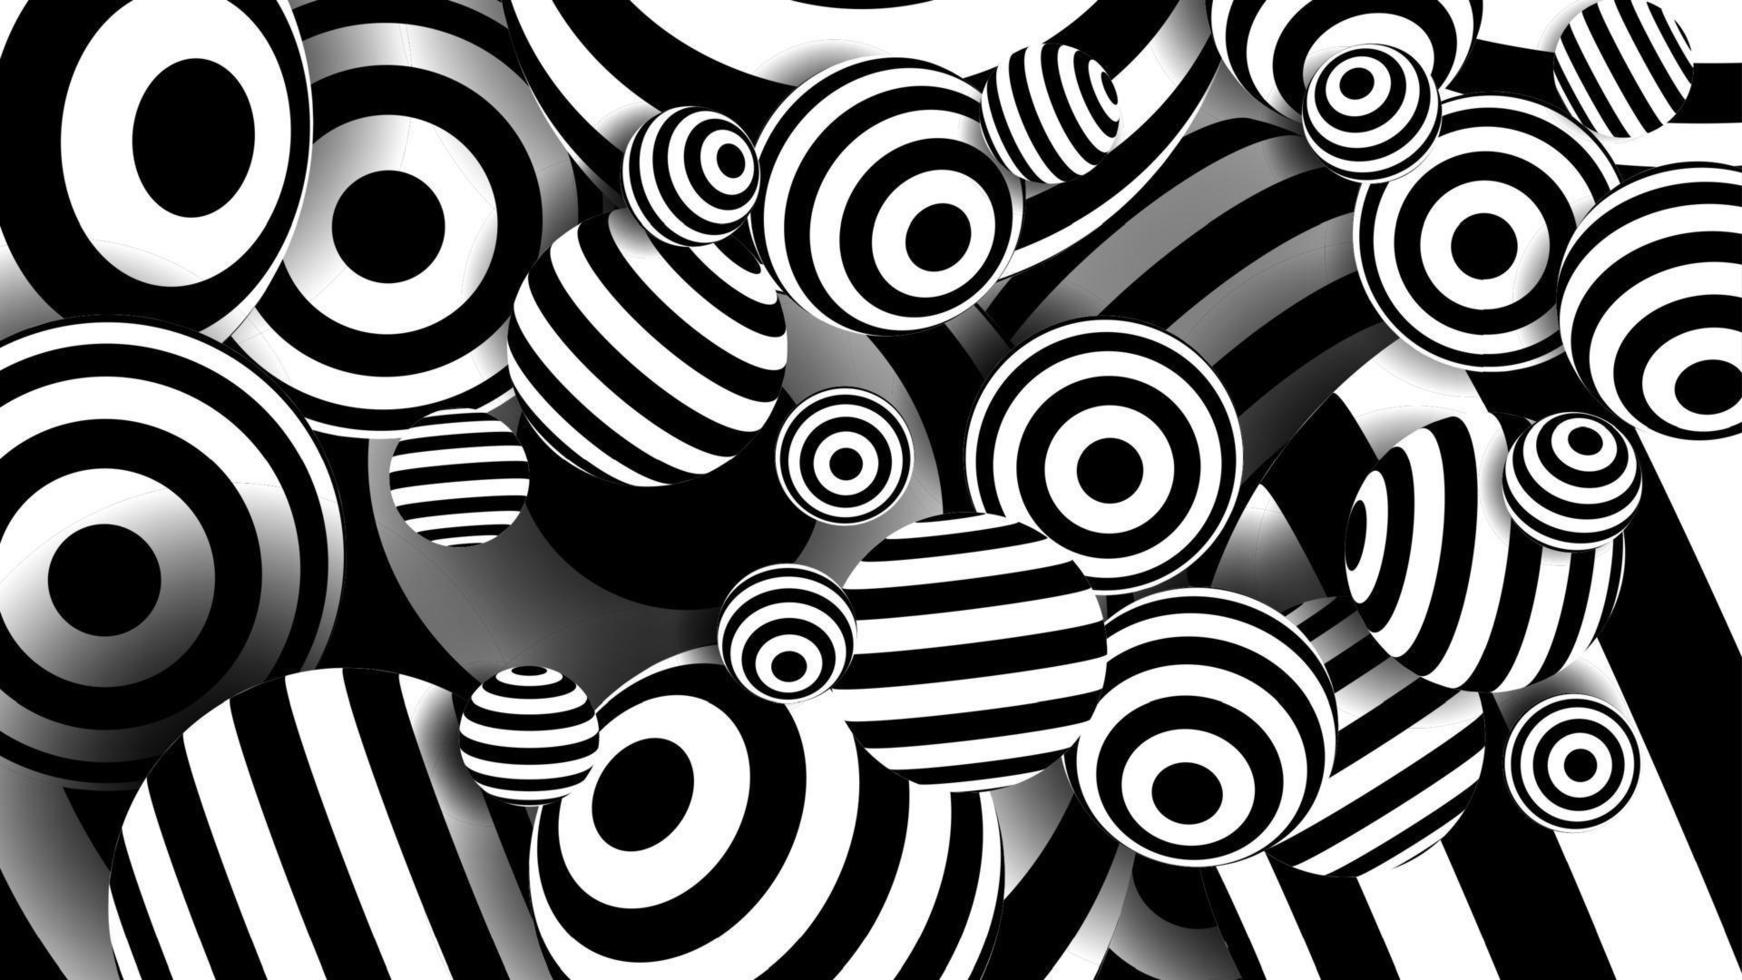 Bälle schwarze Linien Vektor. gestreifte optische Täuschung. weiße und schwarze Linien. abstrakte Darstellung vektor